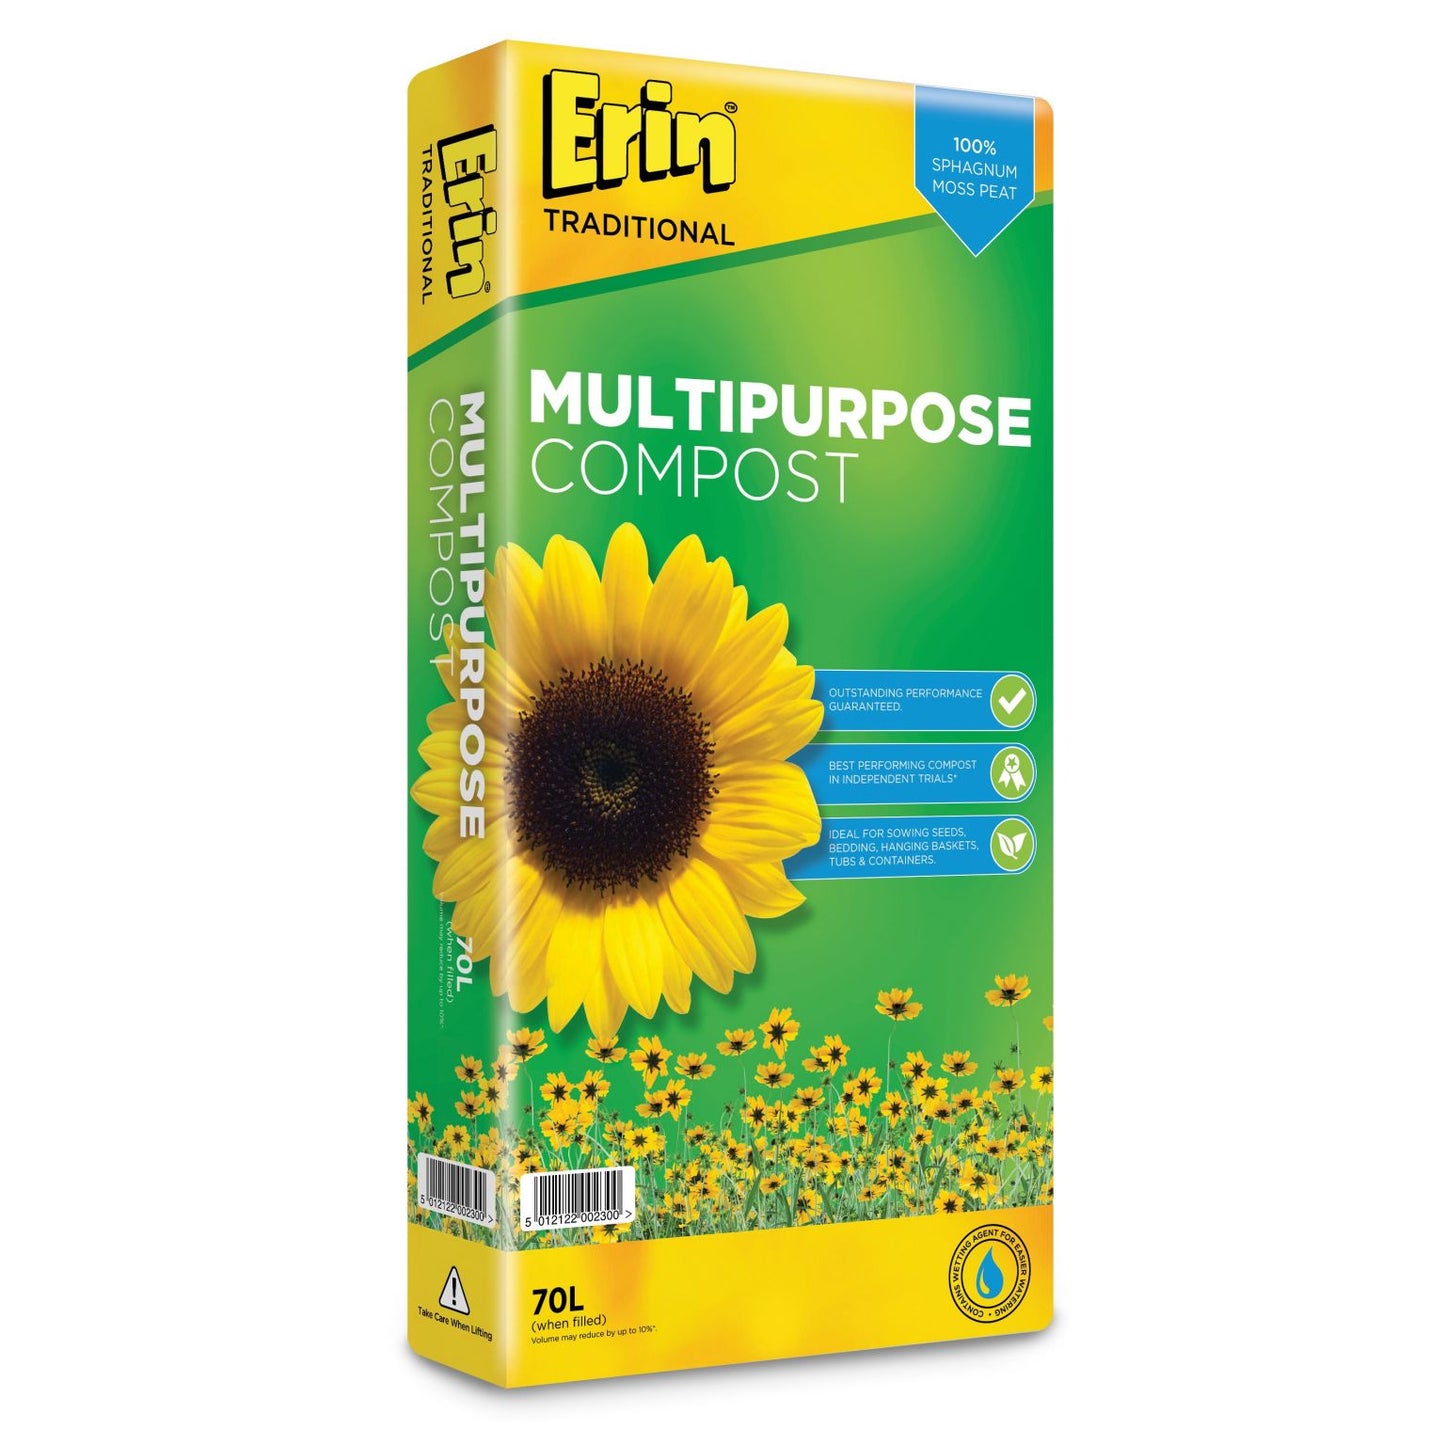 Erin multi purpose compost 70L bag